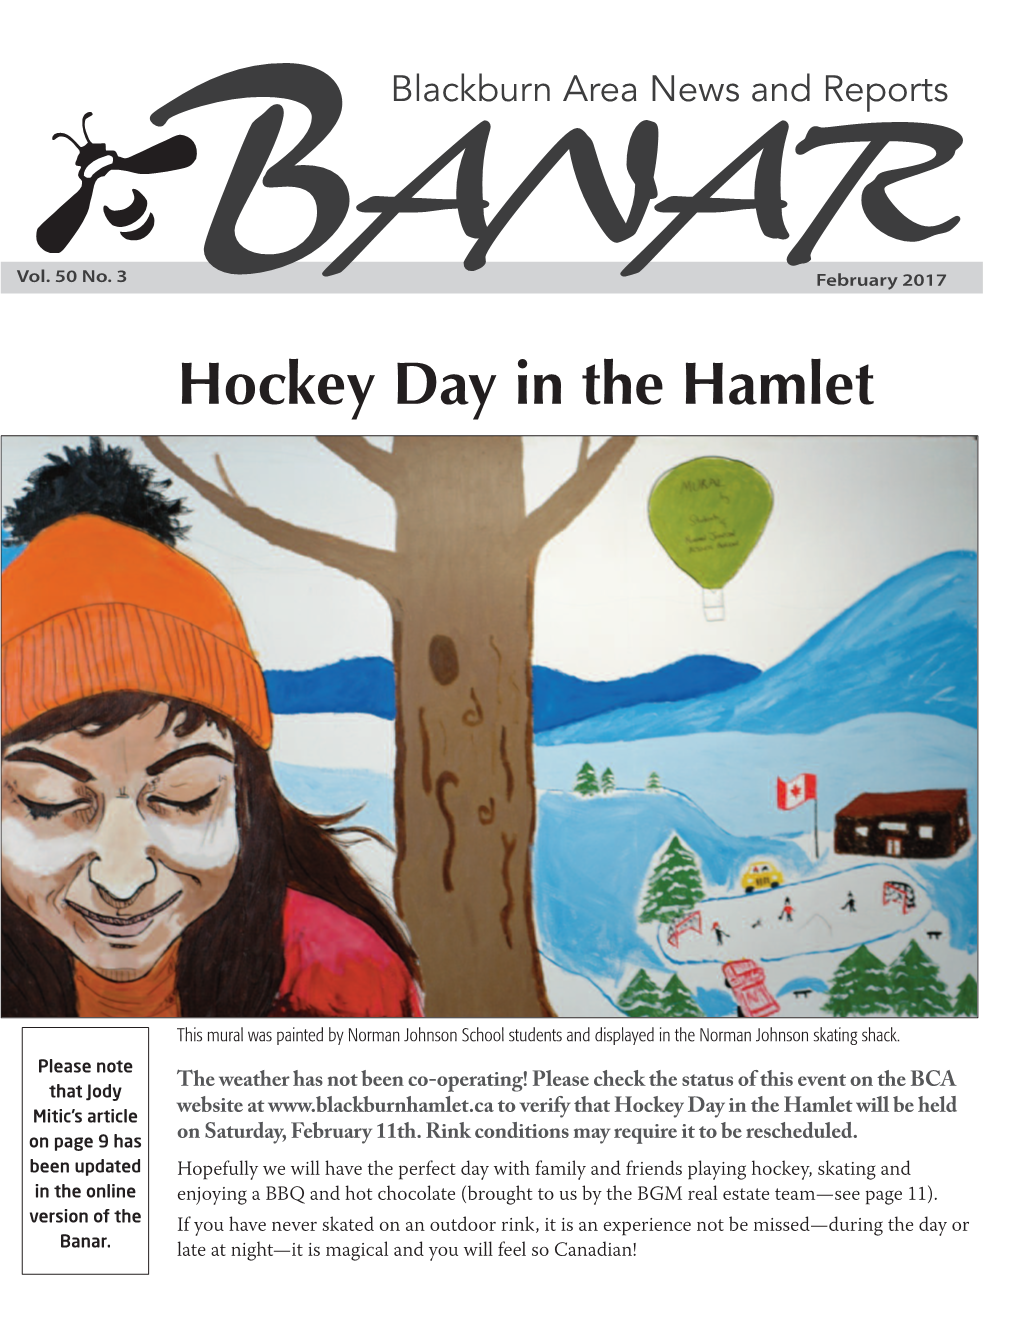 February 2017 Hockey Day in the Hamlet